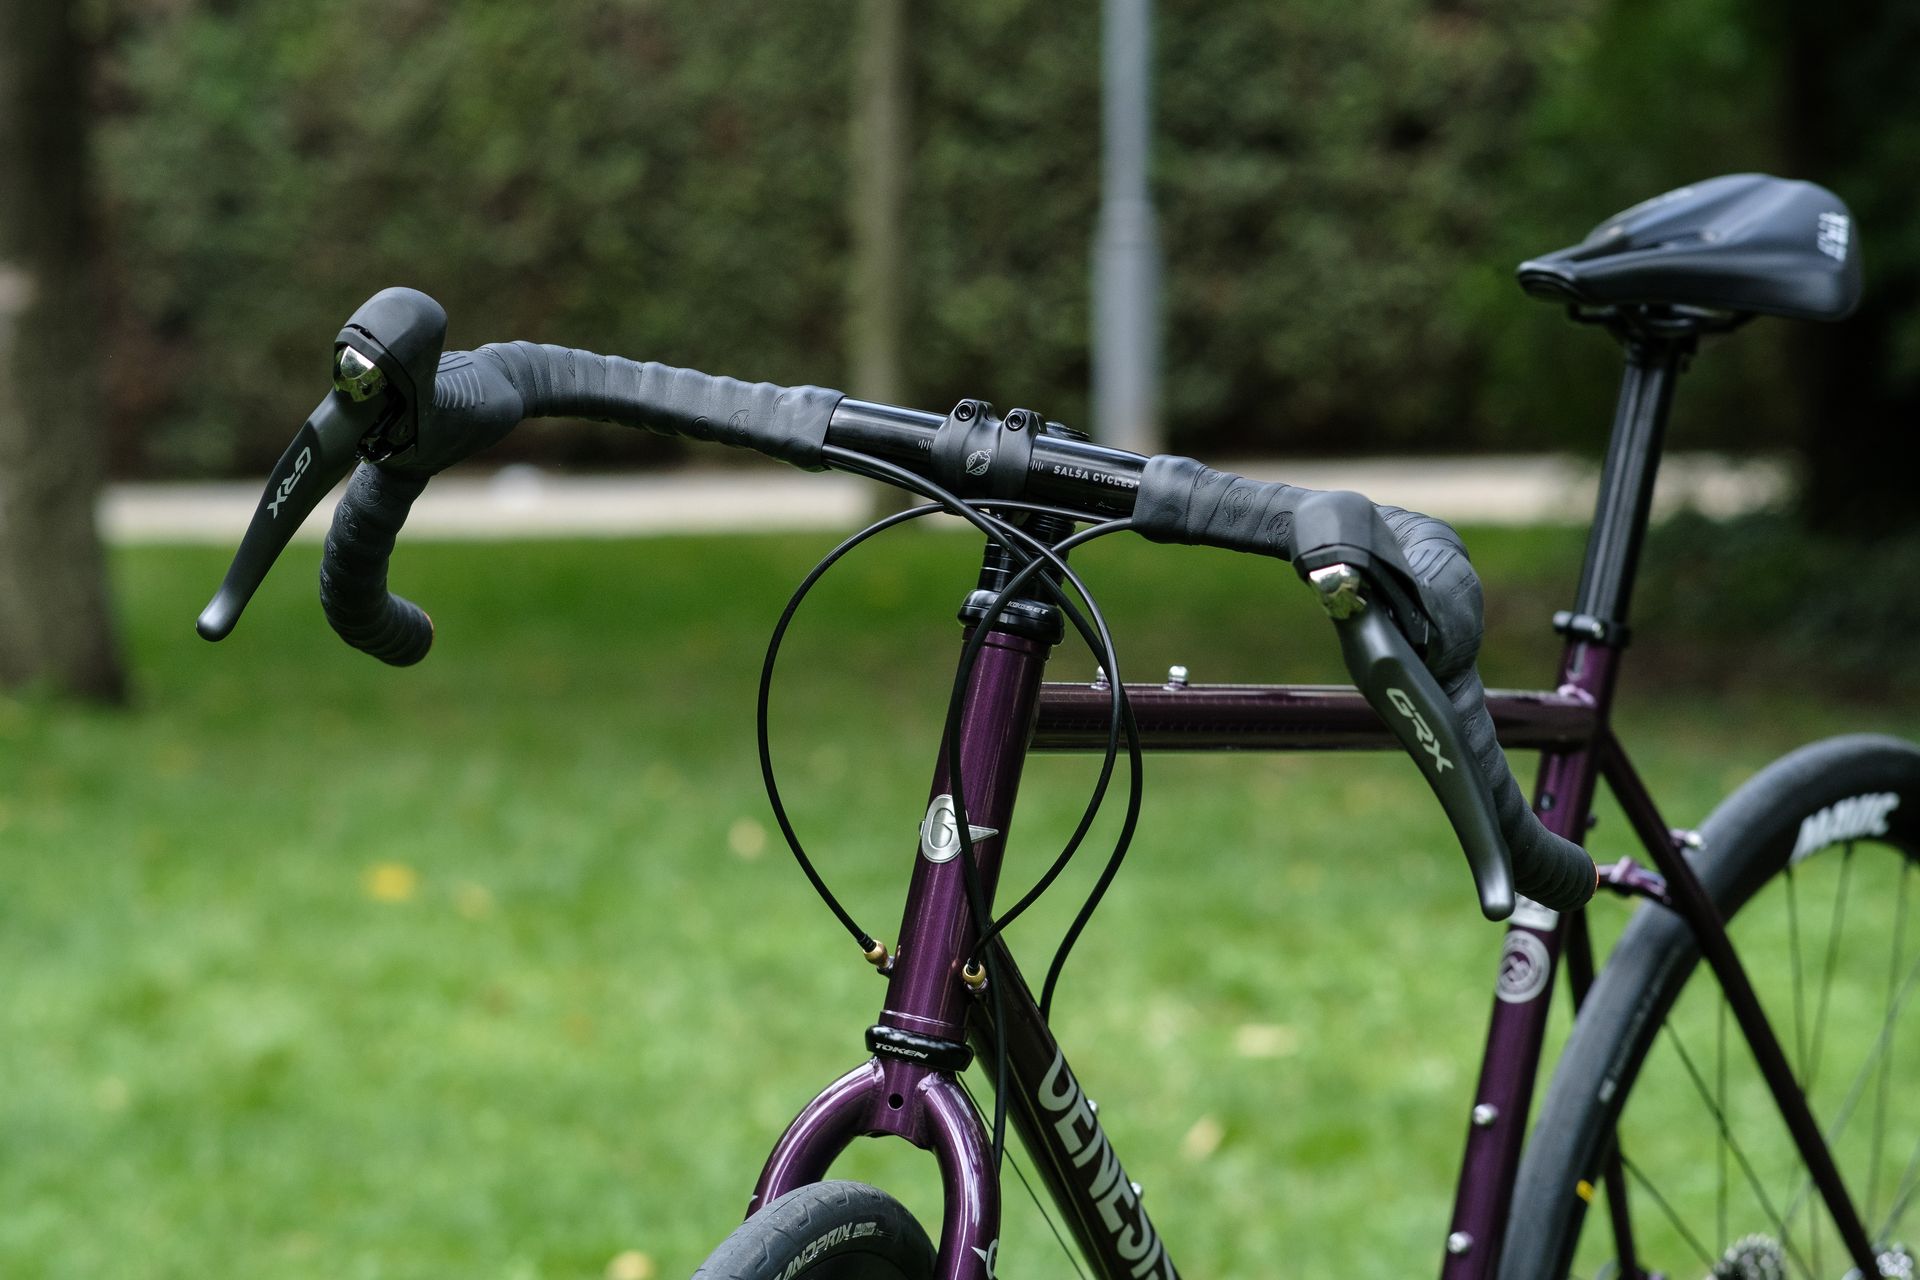 Magasin et atelier de vélo à paris 13 assure le reglage et l'entretien de tous les vélos de route, de course, de gravel, de voyage